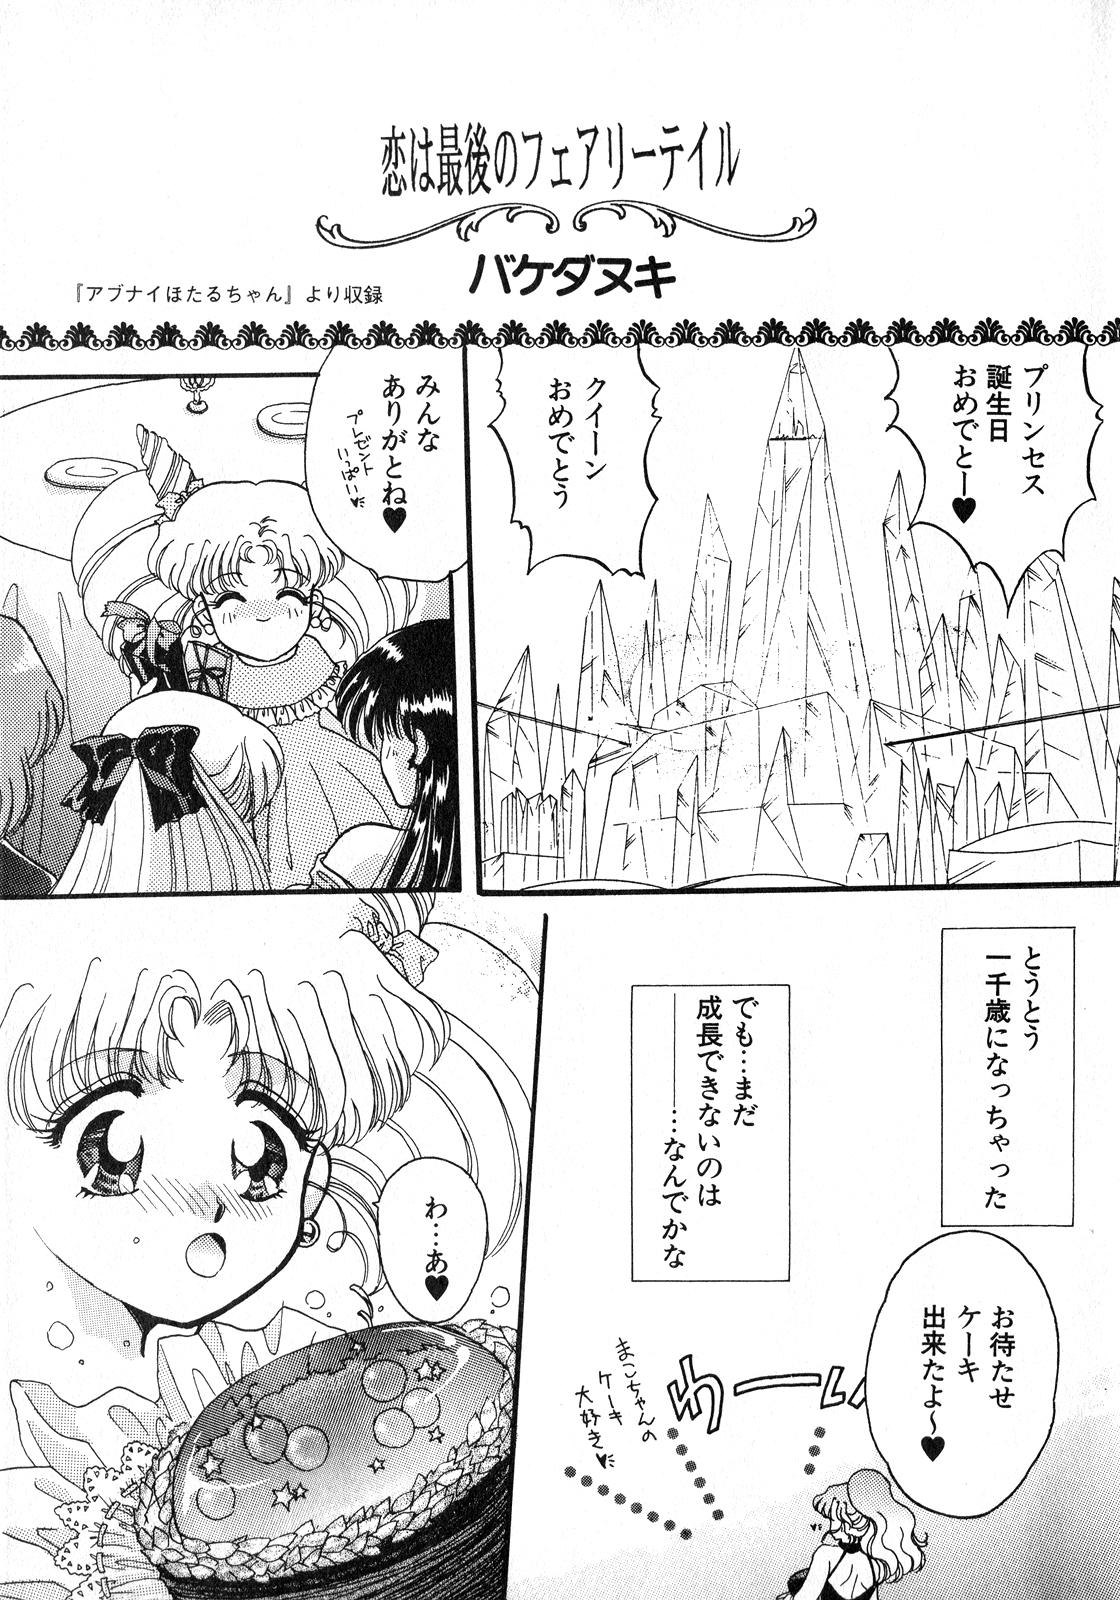 Big Black Dick Lunatic Party 8 - Sailor moon Coed - Page 4